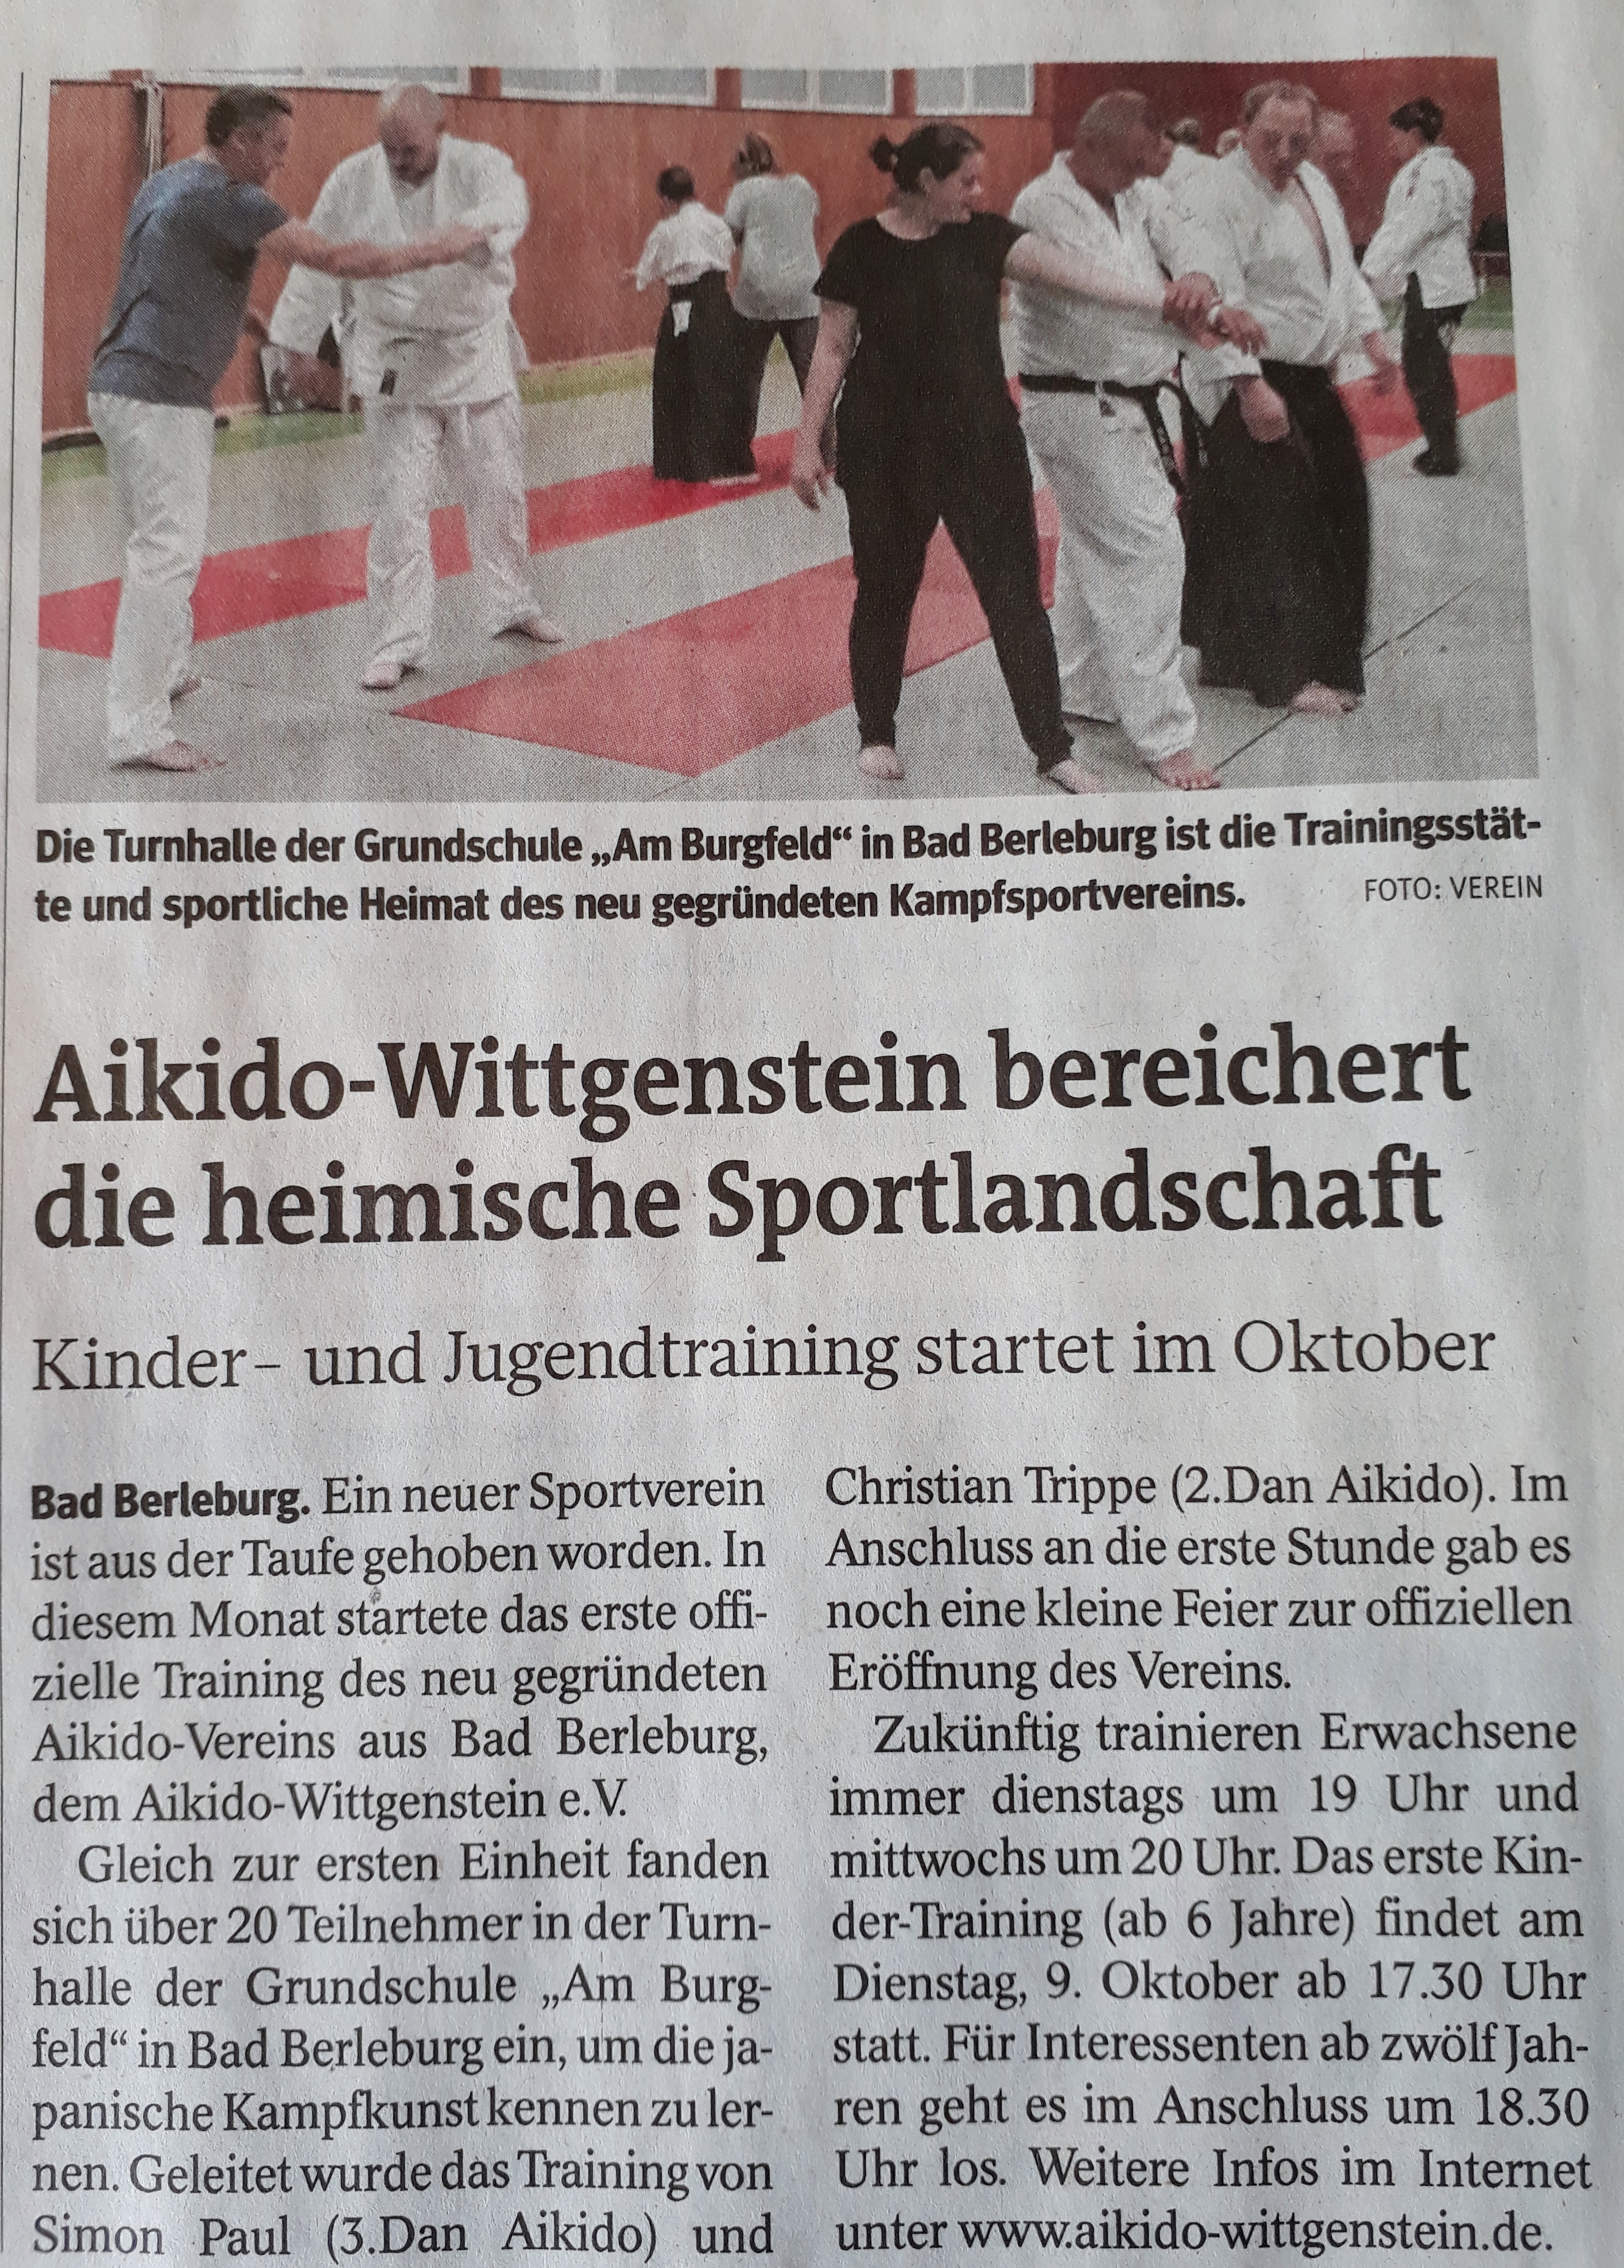 Aikido-Wittgenstei-bereichert-die-heimische-Sportlandschaft